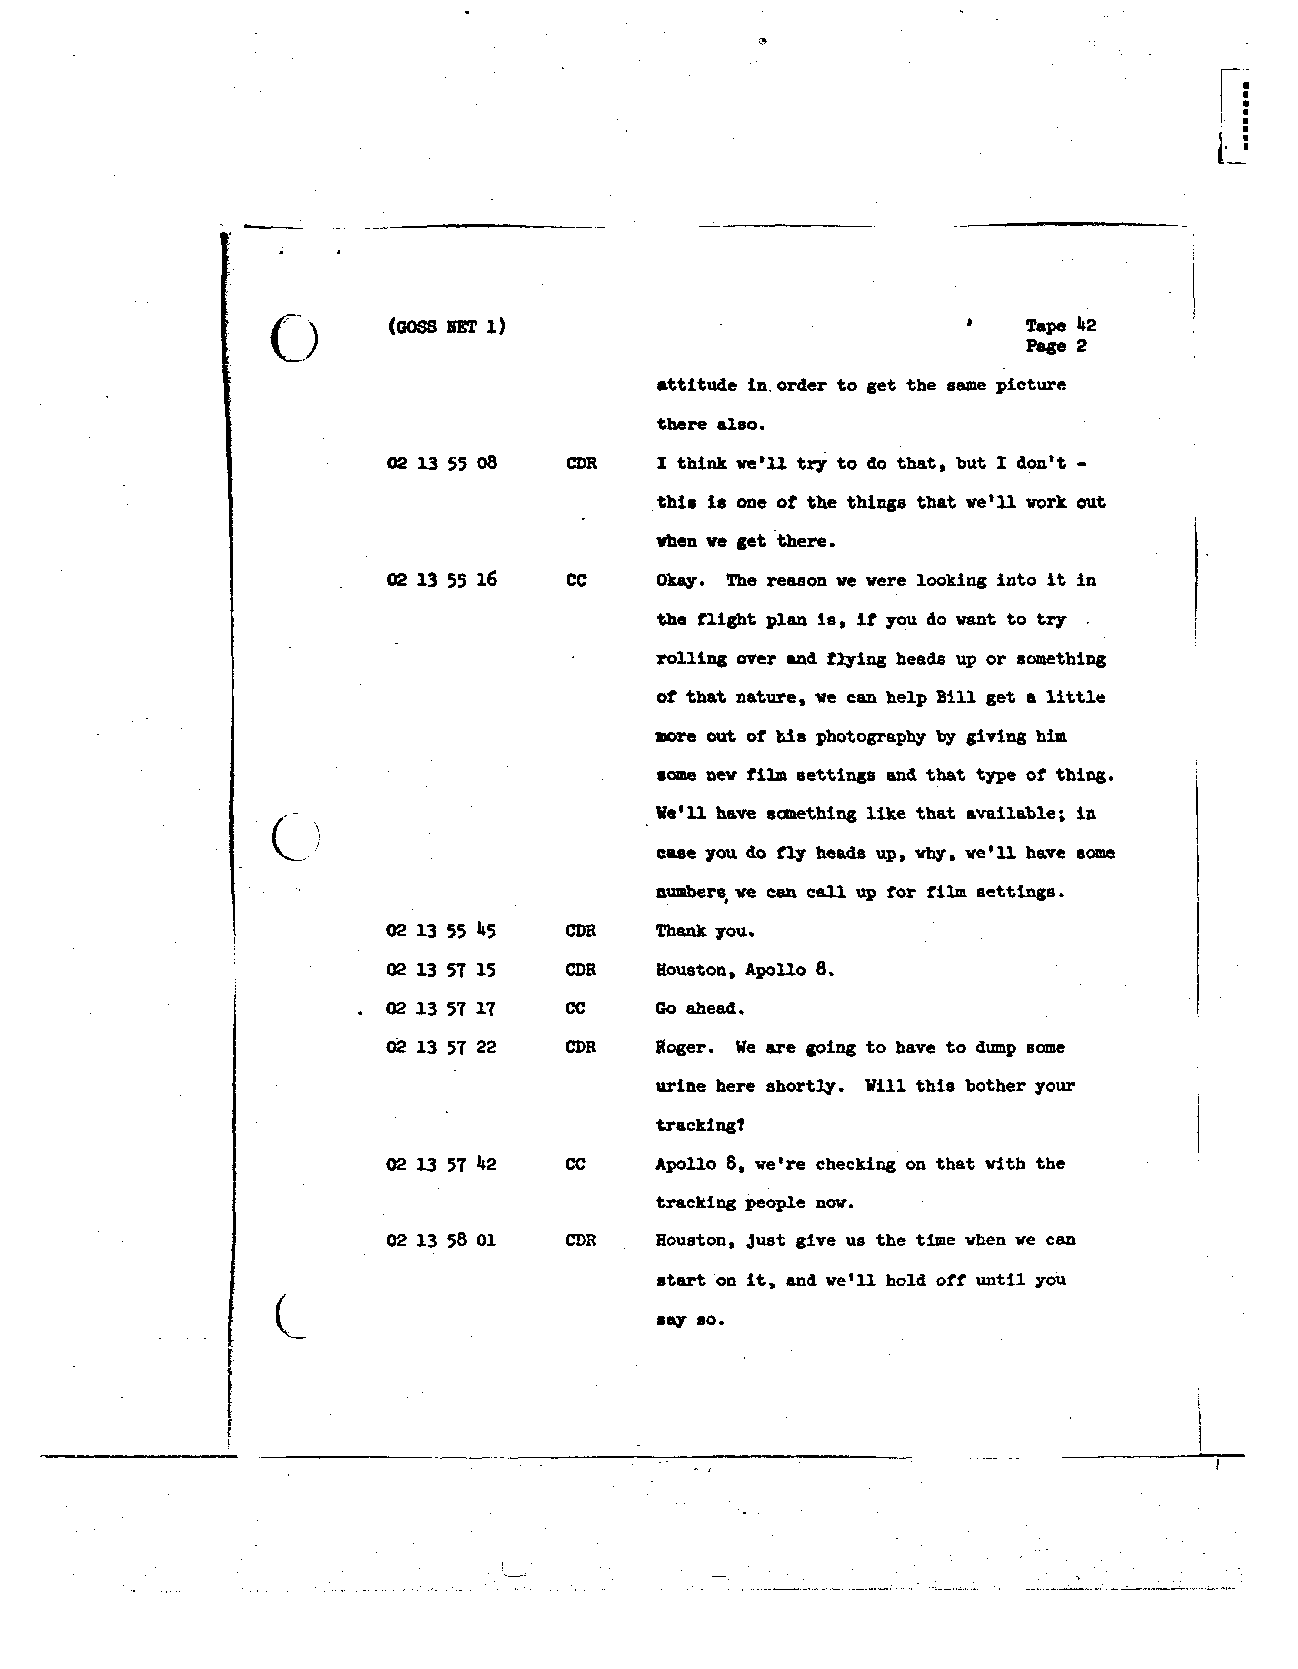 Page 324 of Apollo 8’s original transcript